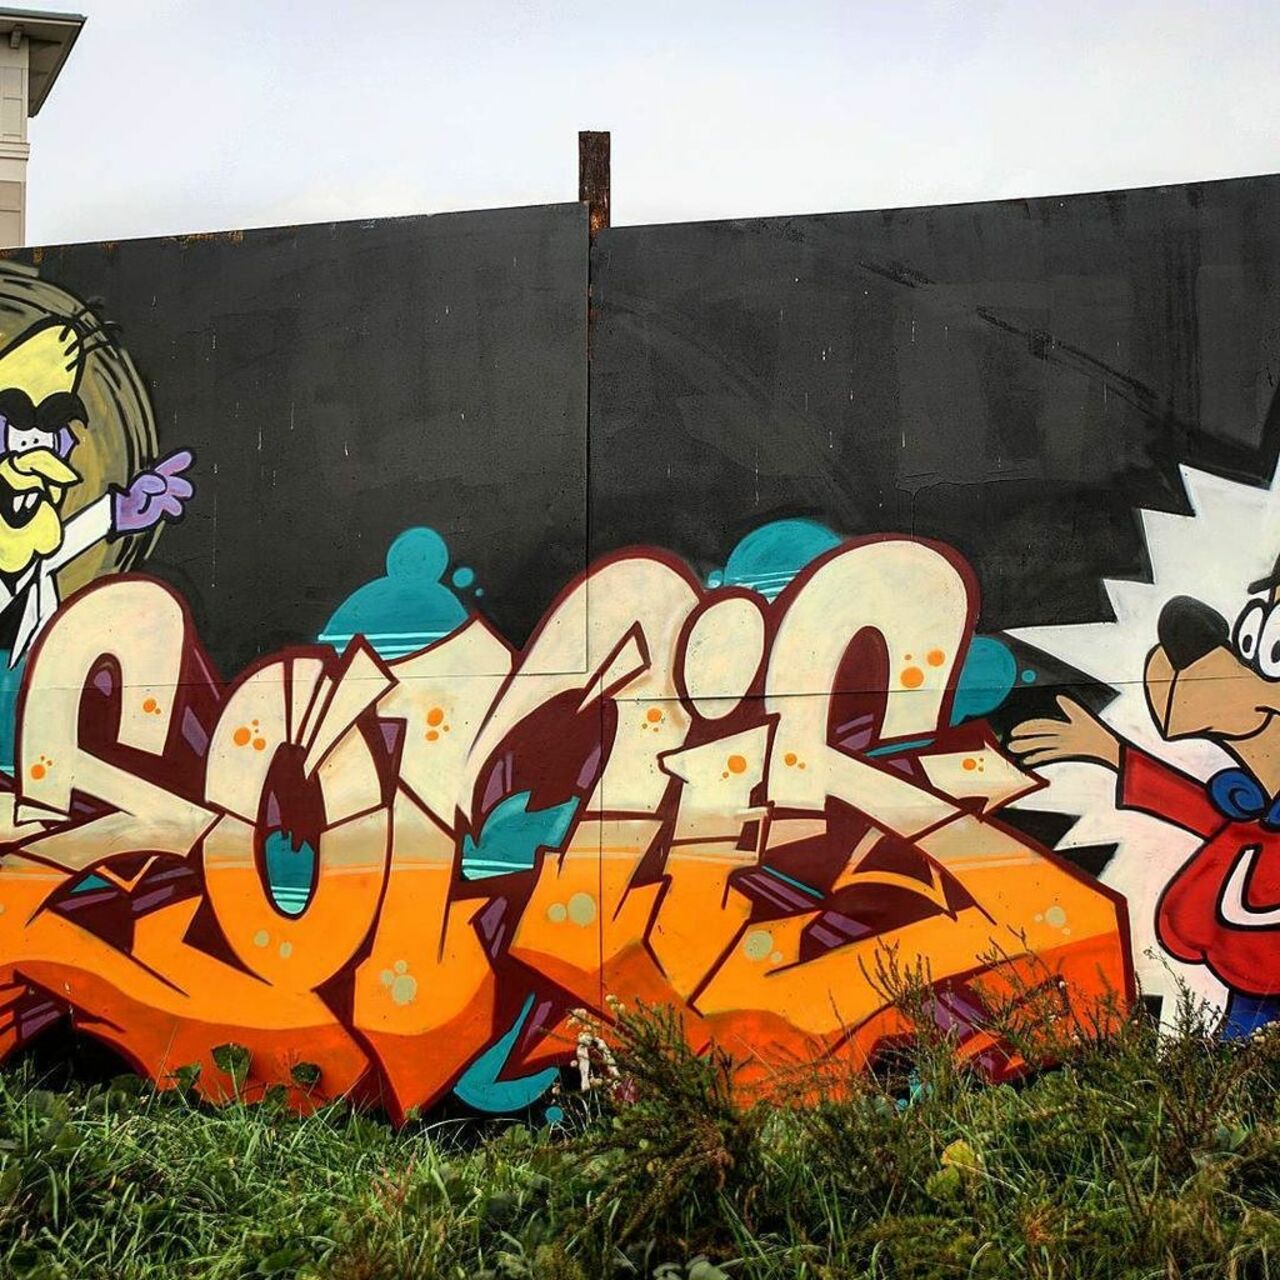 Nice pic from IG: http://ift.tt/1UgpzsK out on the #beltline #graffiti #streetart #eastatlanta #downtown #atlant… https://t.co/2CaNIvJKvk